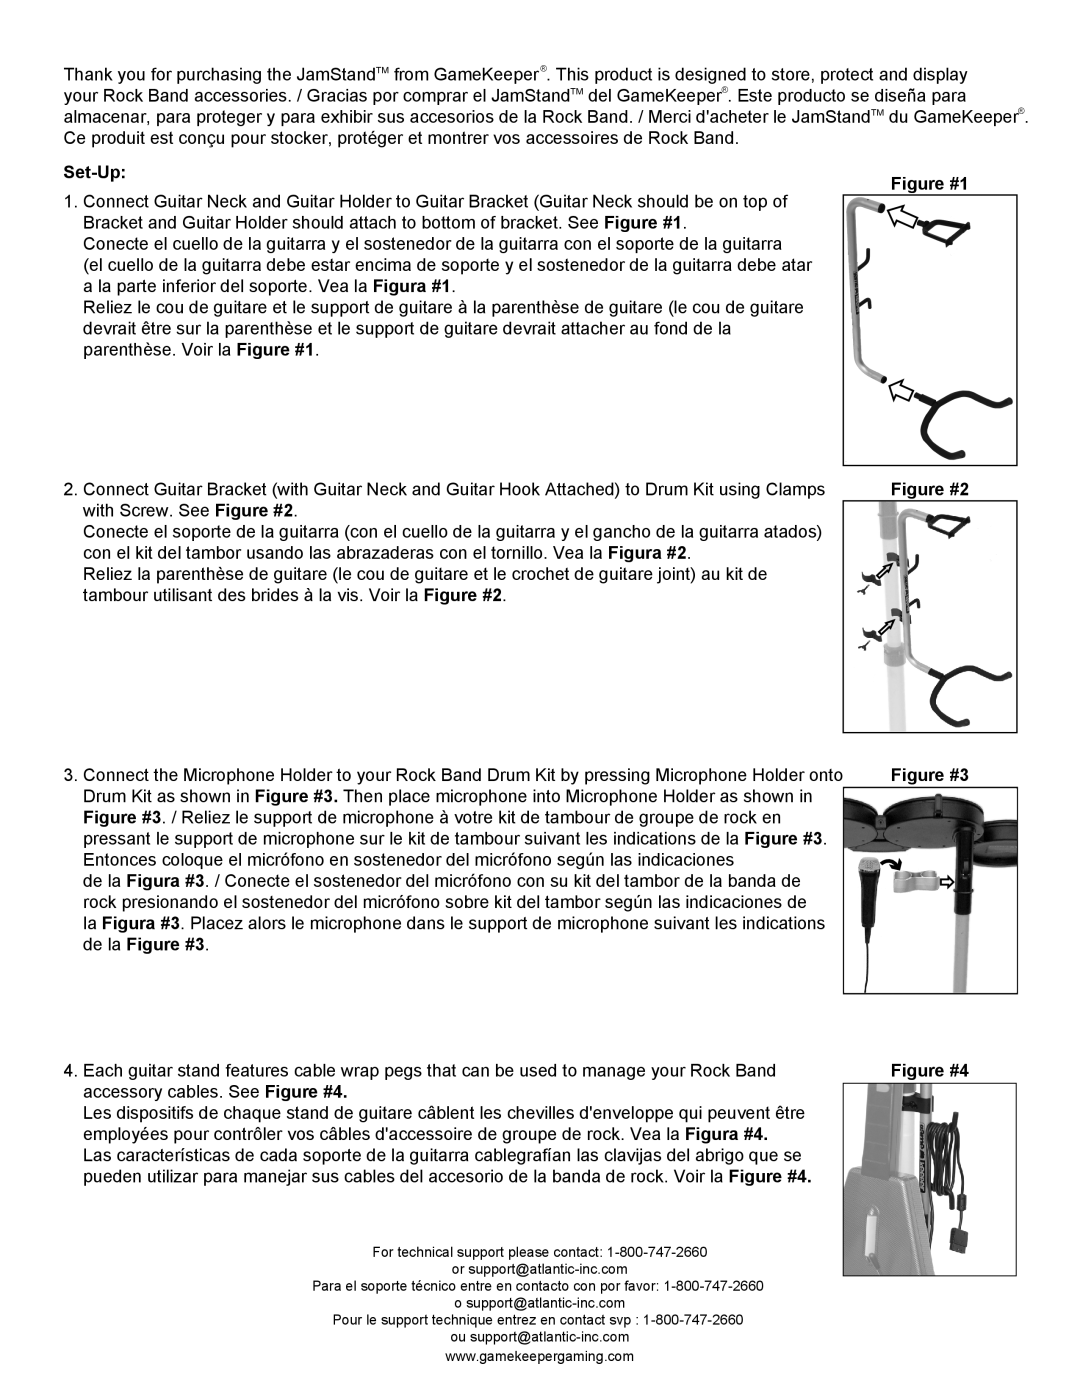 Atlantic Holders, Brackets, Necks, Clamps with screw manual Set-Up, Figure #1, Figure #2, de la Figure #3, Figure #4 